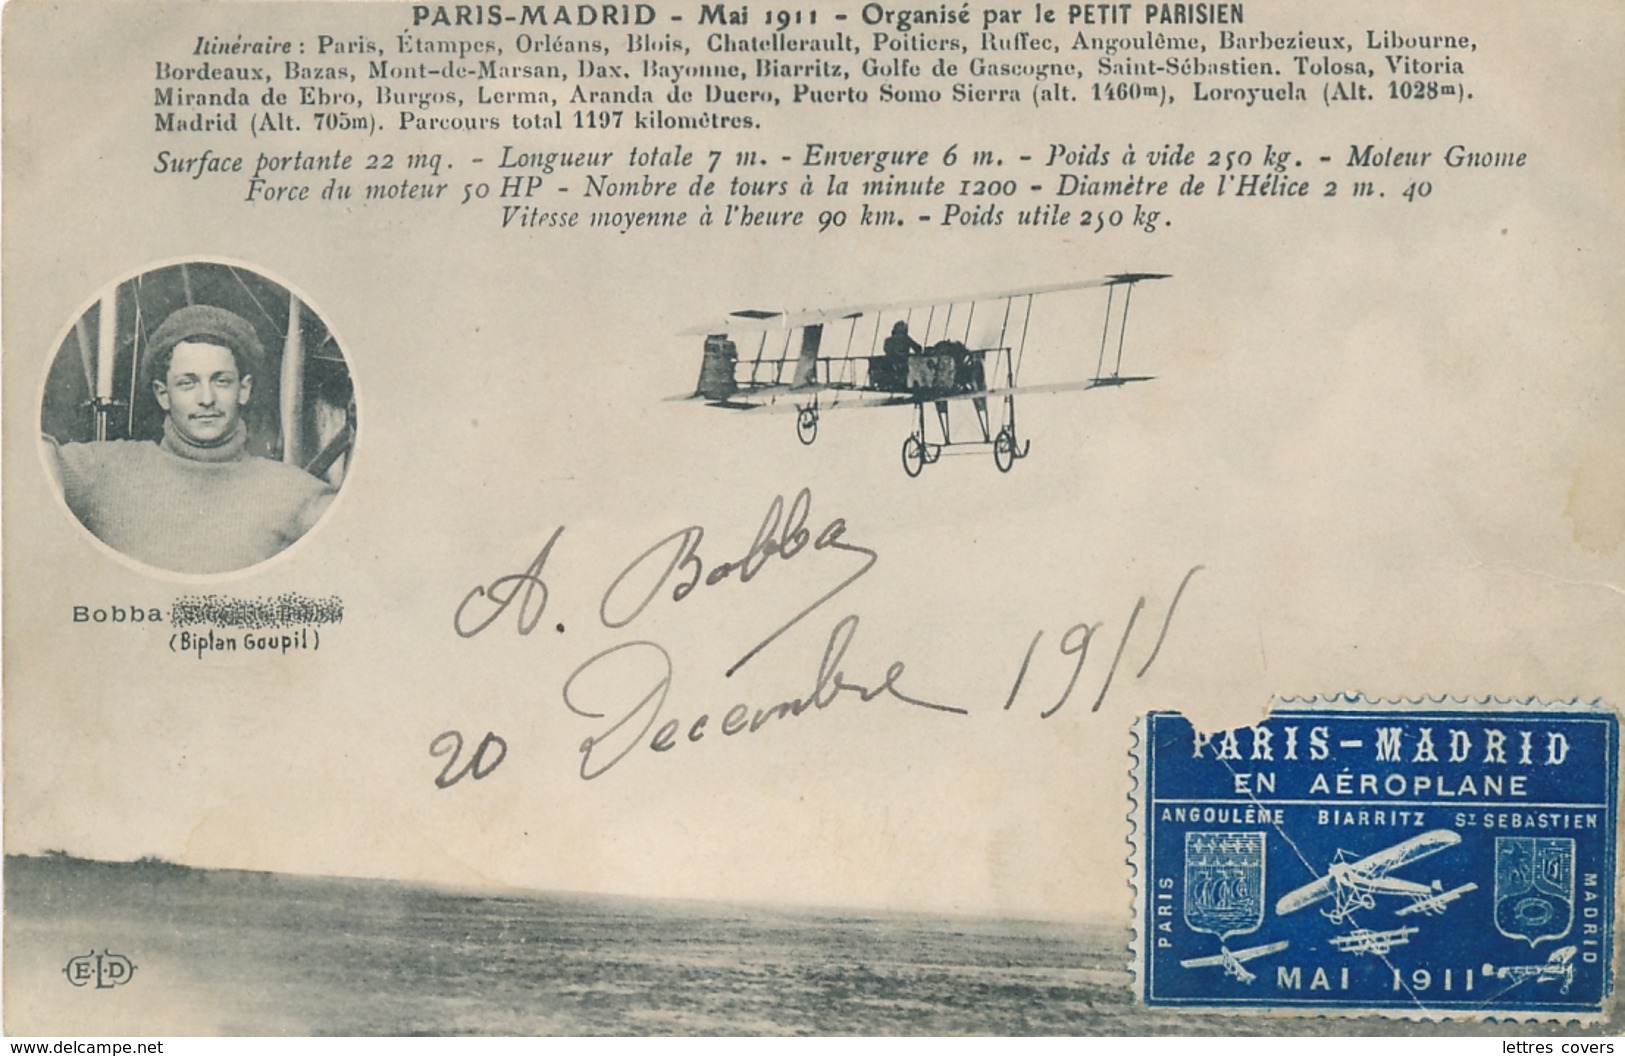 BOBBA CP " PARIS MADRID MAI 1911 Organisé PETIT PARISIEN Biplan Goupil Signature Autographe + Vignette - Aviateurs